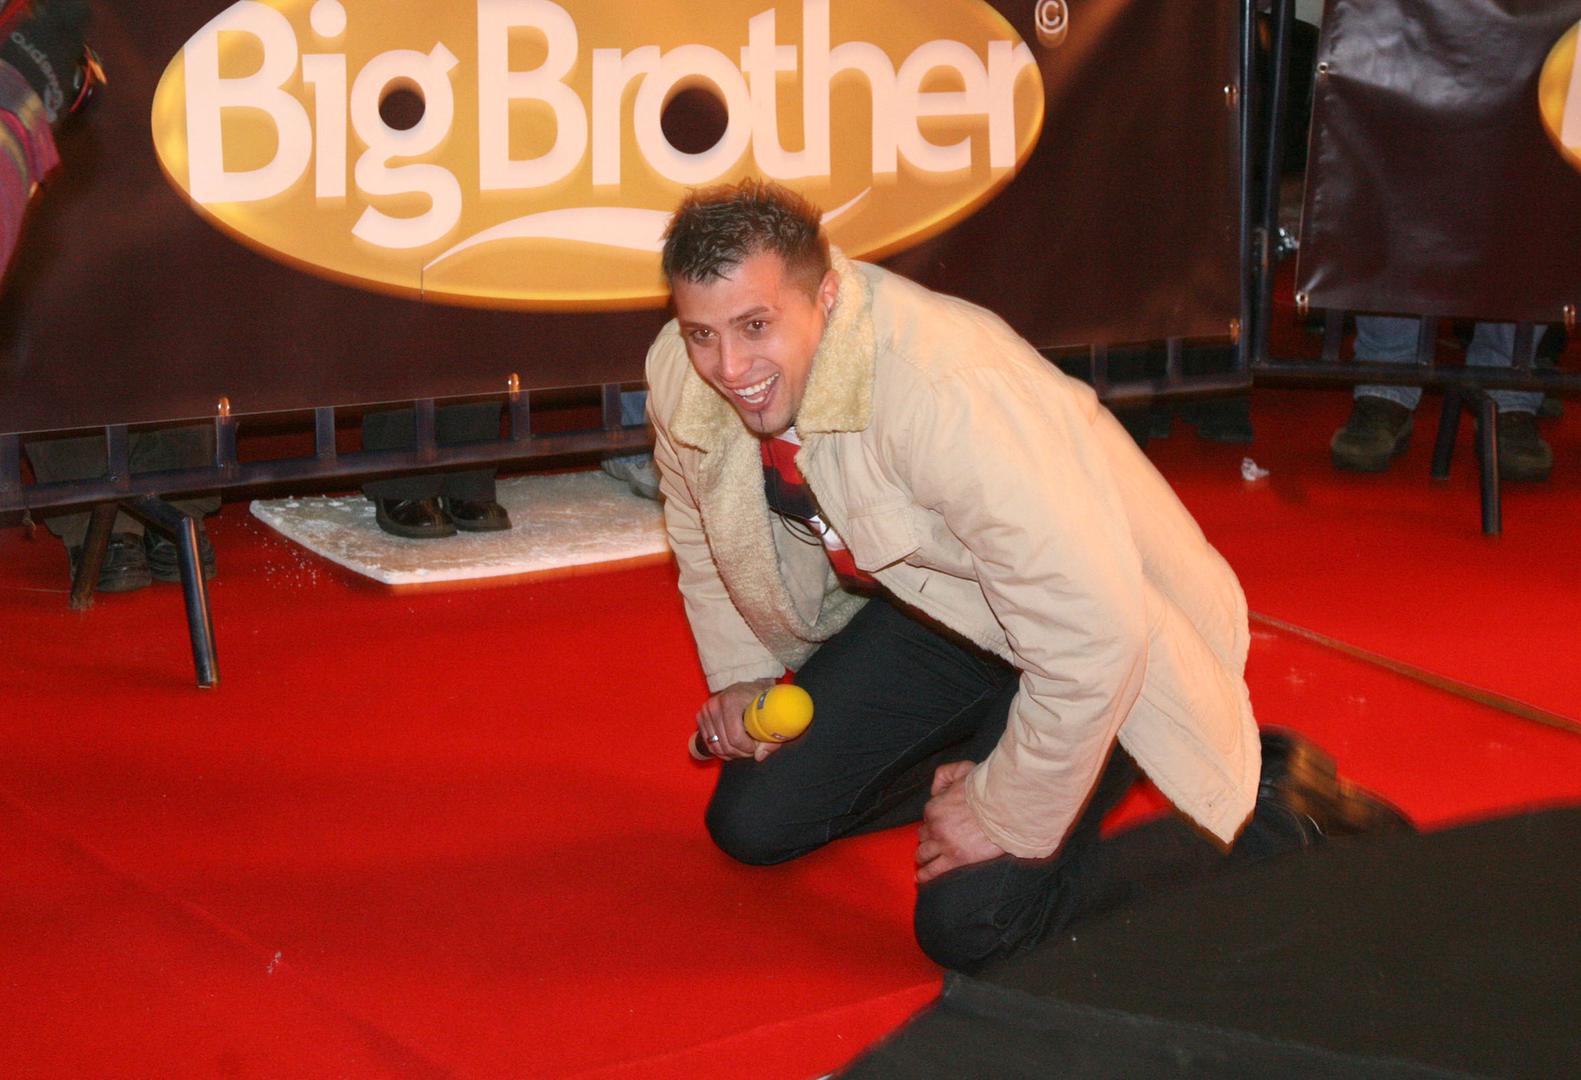 Prije 11 godina iz Big Brother kuće, nakon 106 dana izolacije, kao pobjednik je izašao Vedran Lovrenčić iz Slavonskog Broda. 